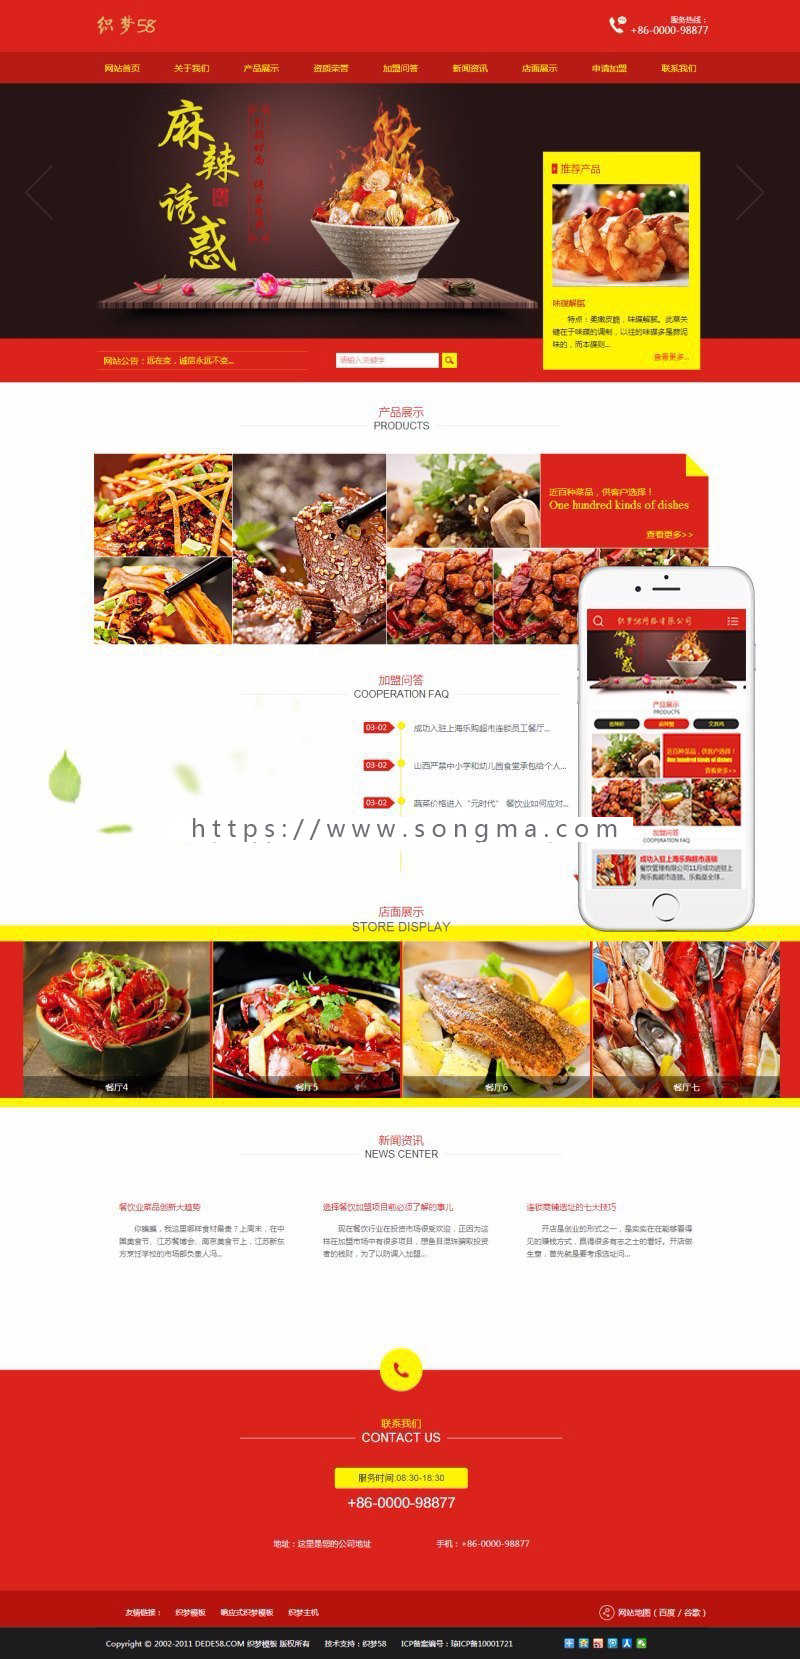 红色风格食品饭店类企业网站织梦整站dedecms模板带手机端